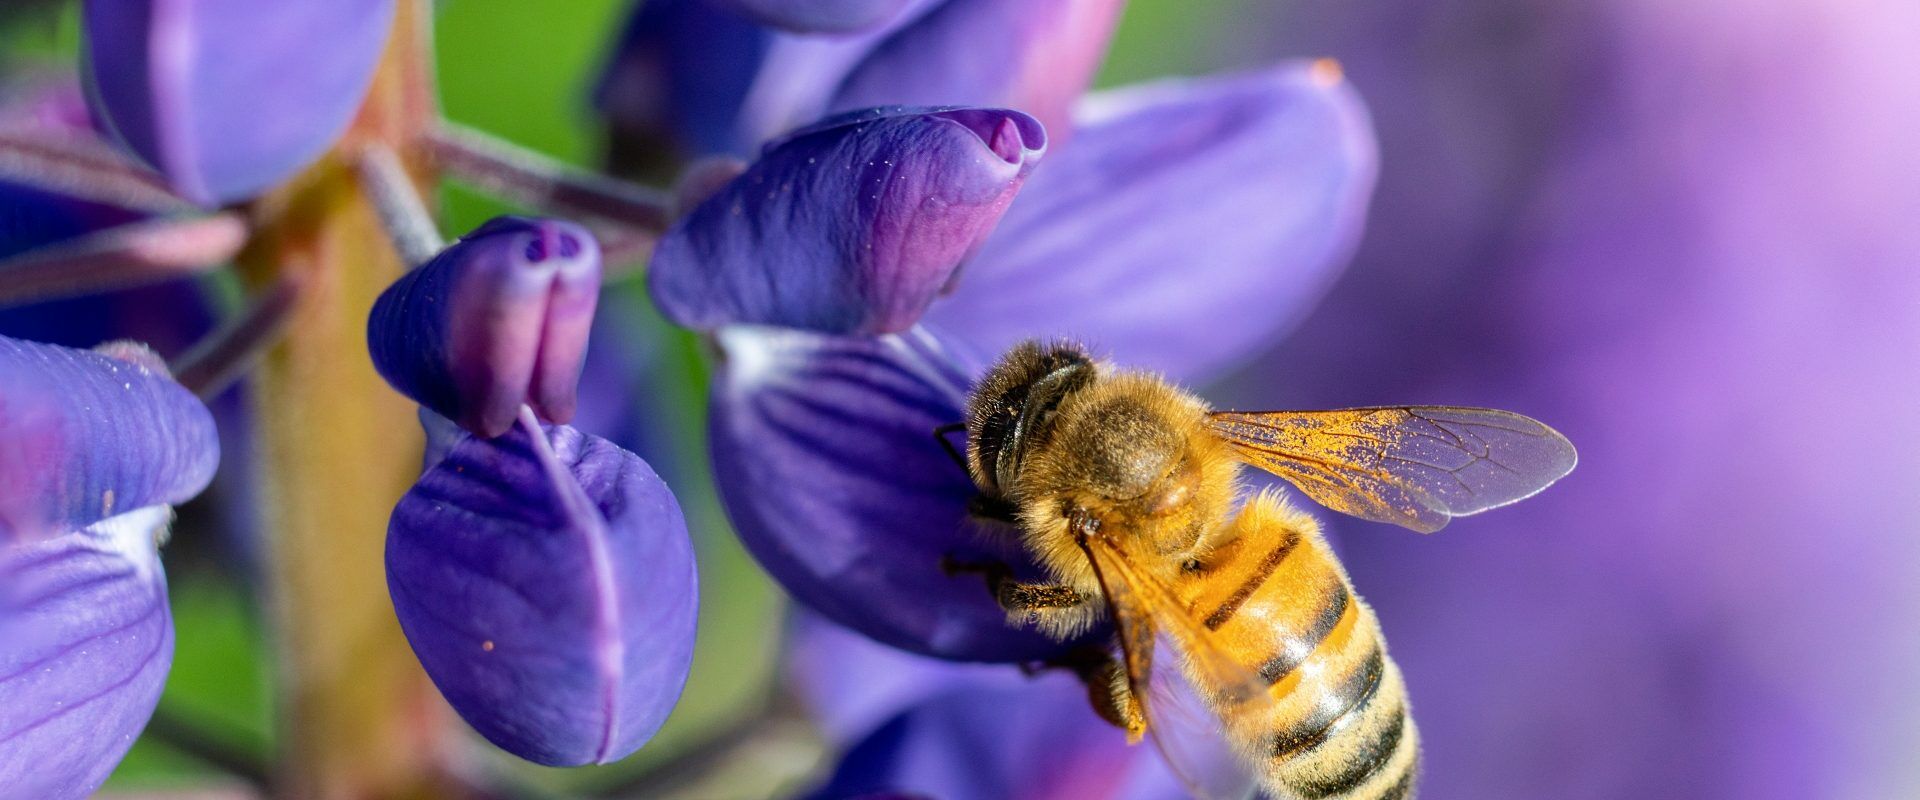 Pszczoła miodna przysiadła na niebieskim kwiatku i zbiera nektar. Rośliny miododajne dla owadów zapylających.